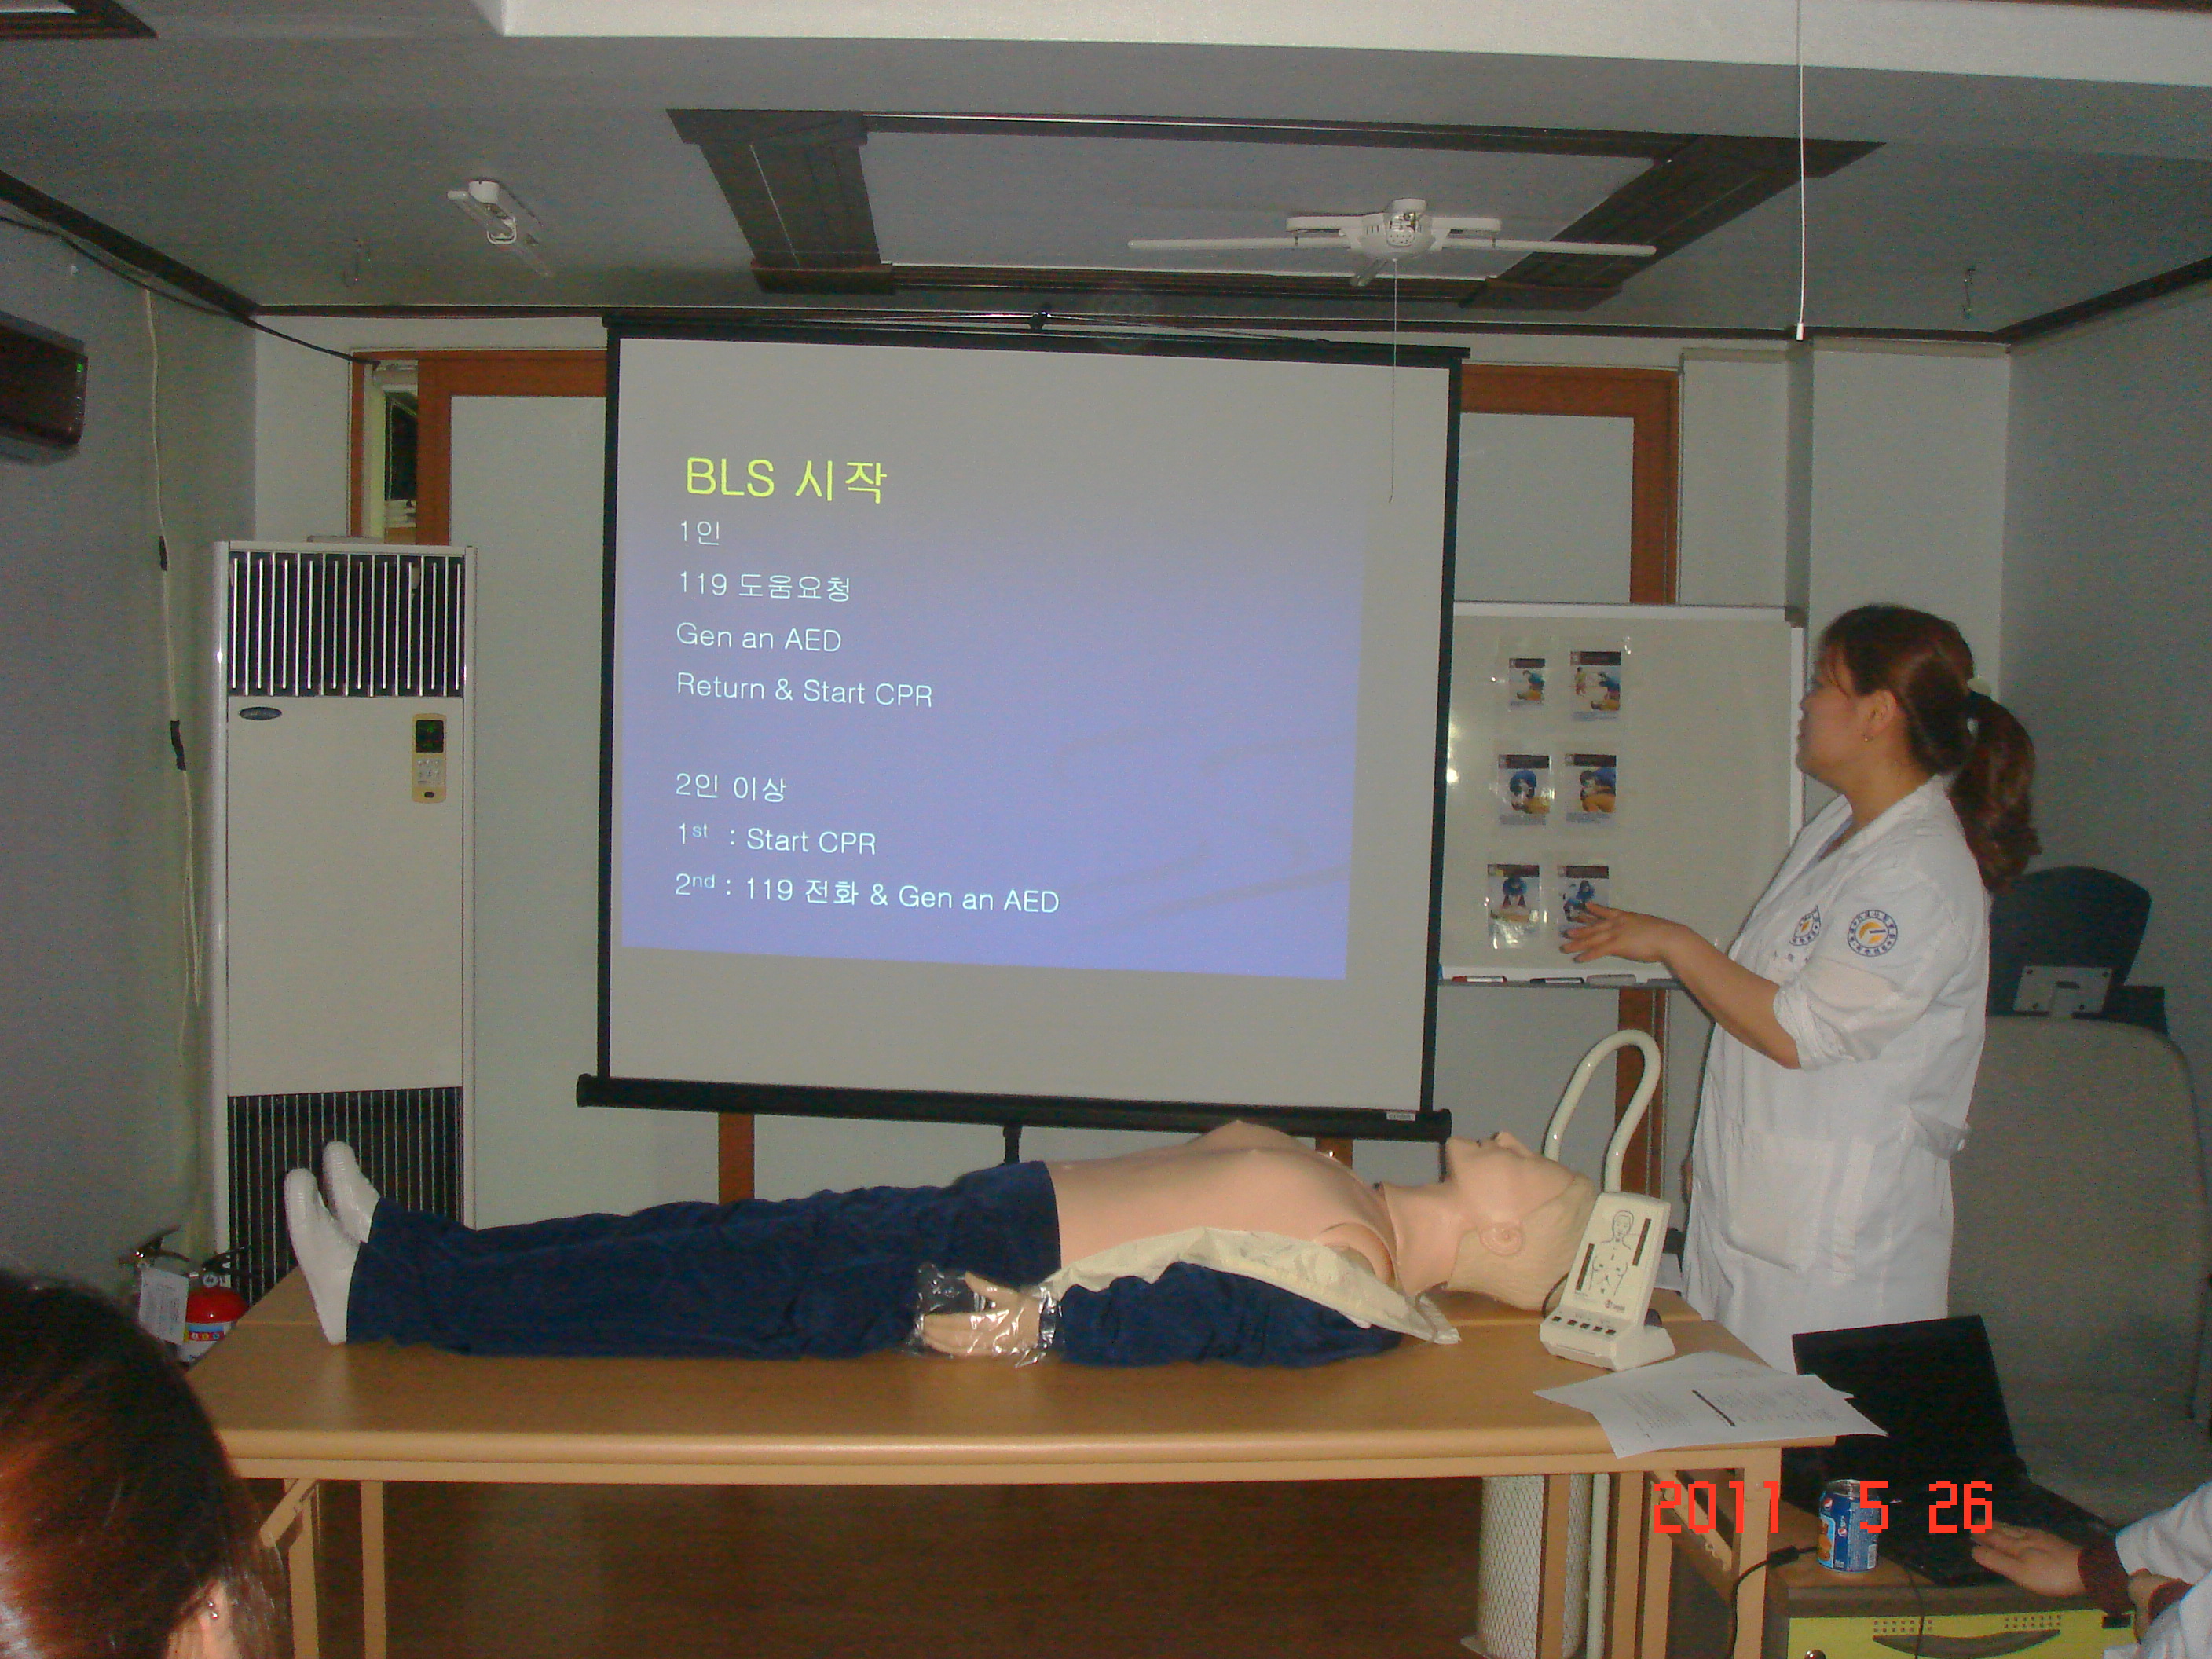 [강북점] 2011년 5월 26일 - 전직원 직무교육 실시 (심폐소생술, CPR) 게시글의 4번째 첨부파일입니다.